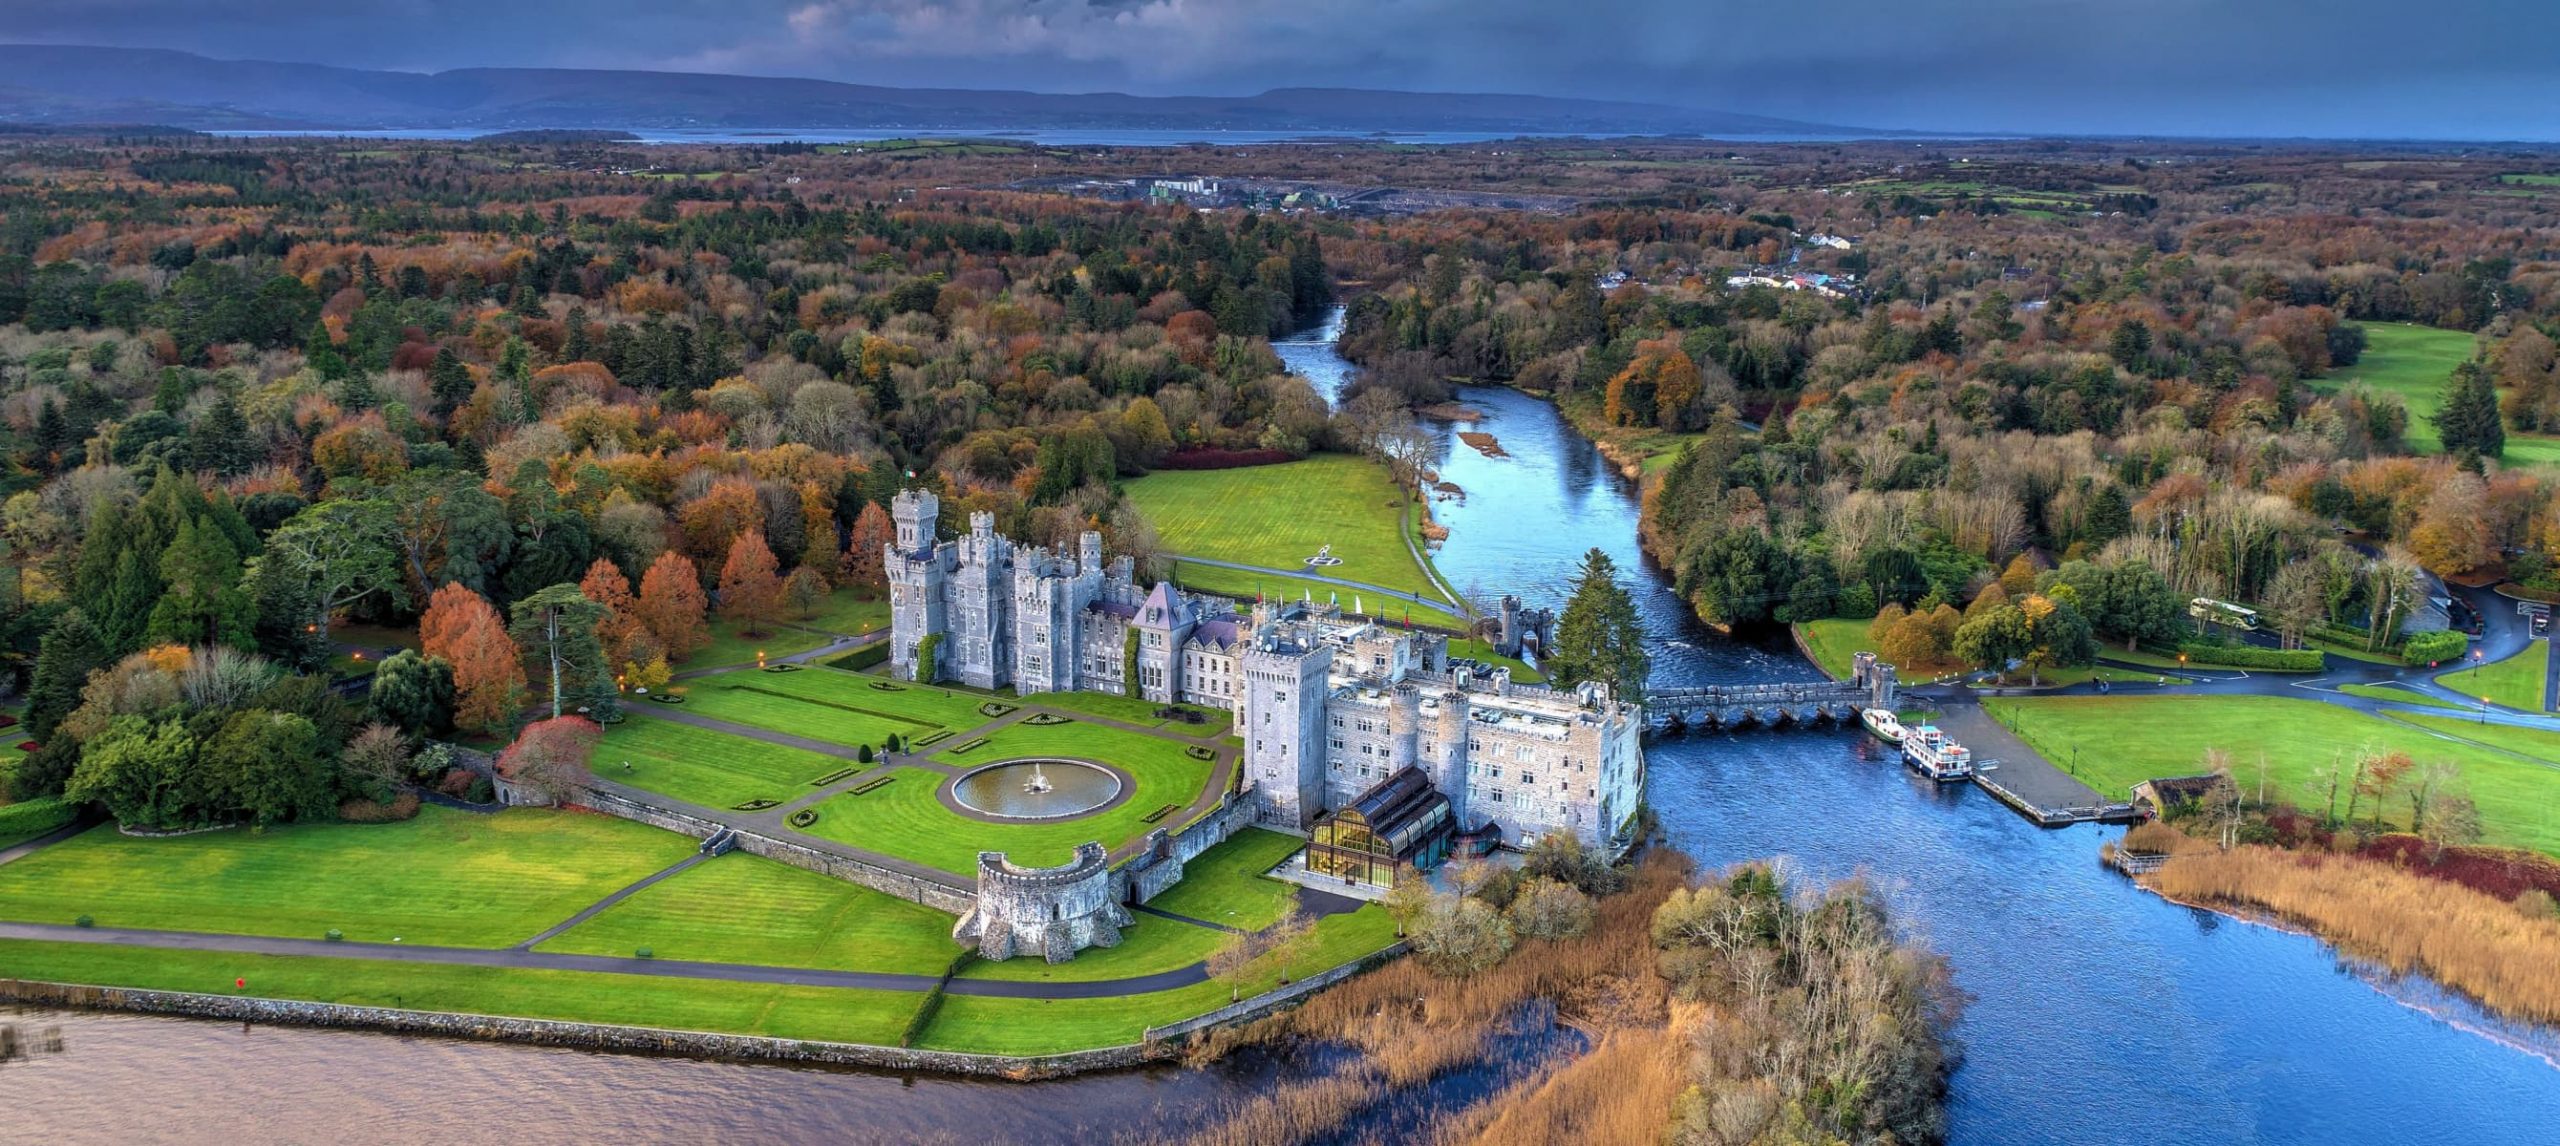 Ashford Castle, in Ireland, UK.